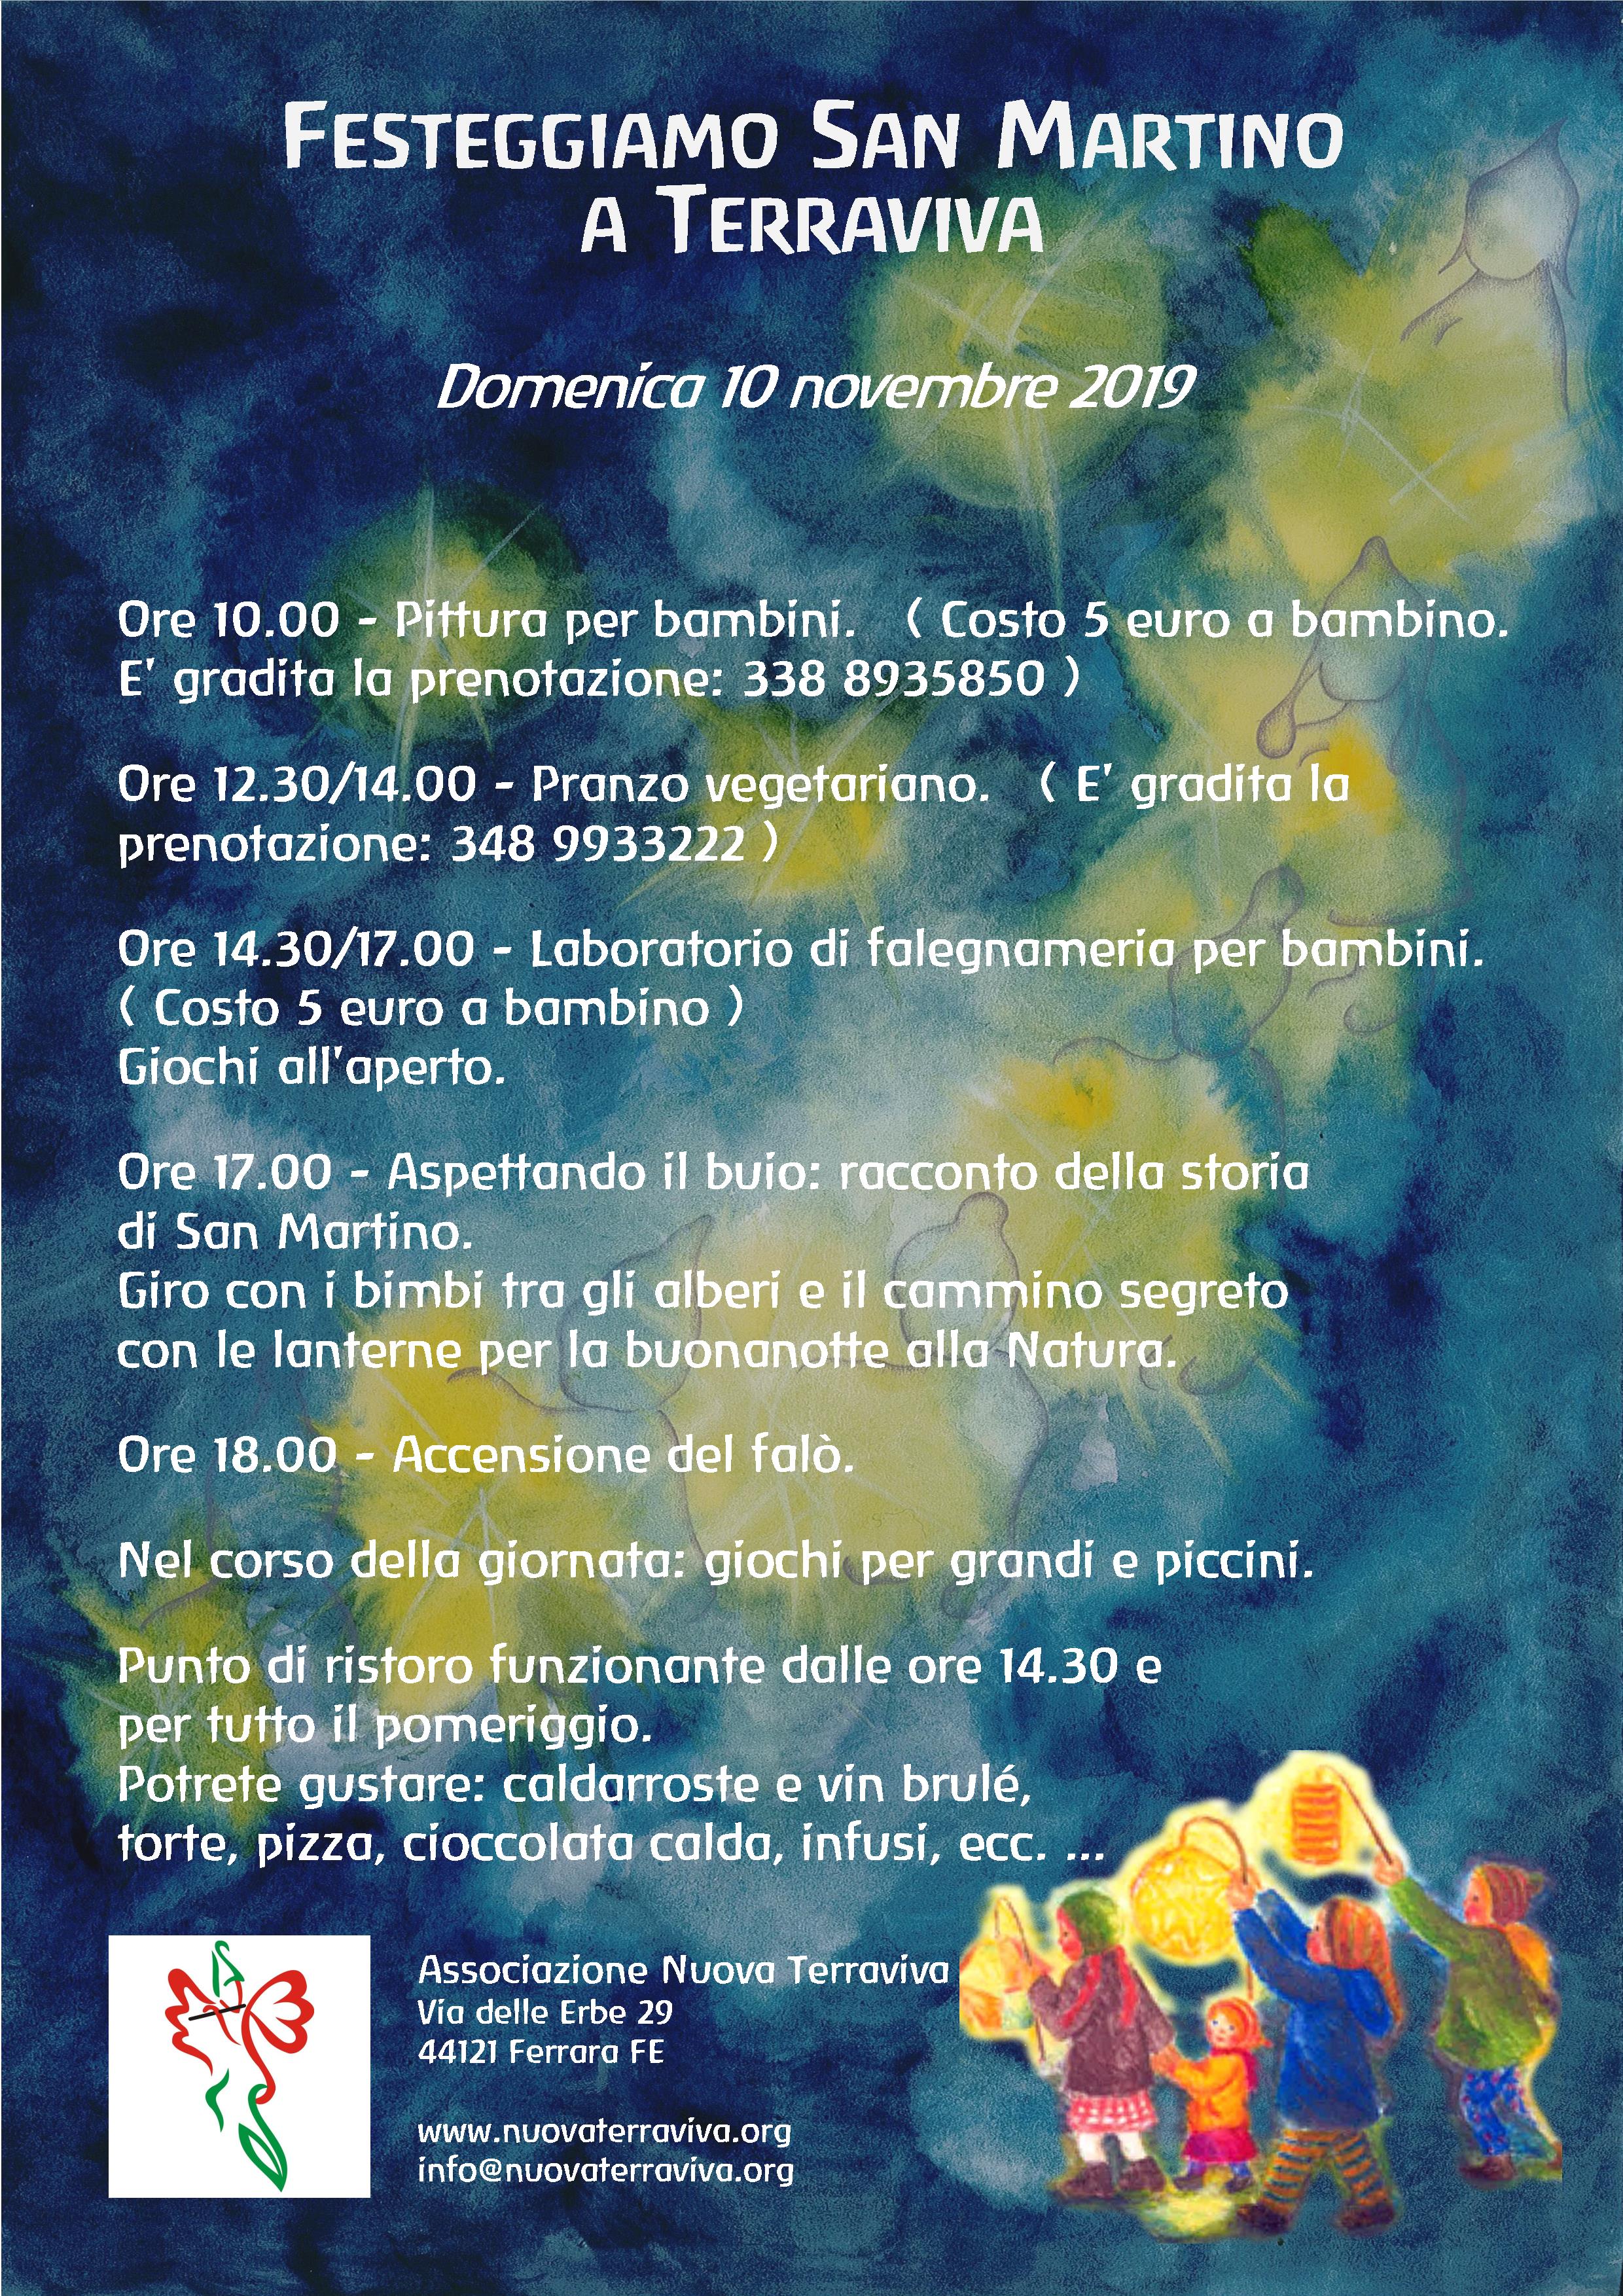 Festa di San Martino @ Associazione Nuova Terraviva | Ferrara | Emilia-Romagna | Italia